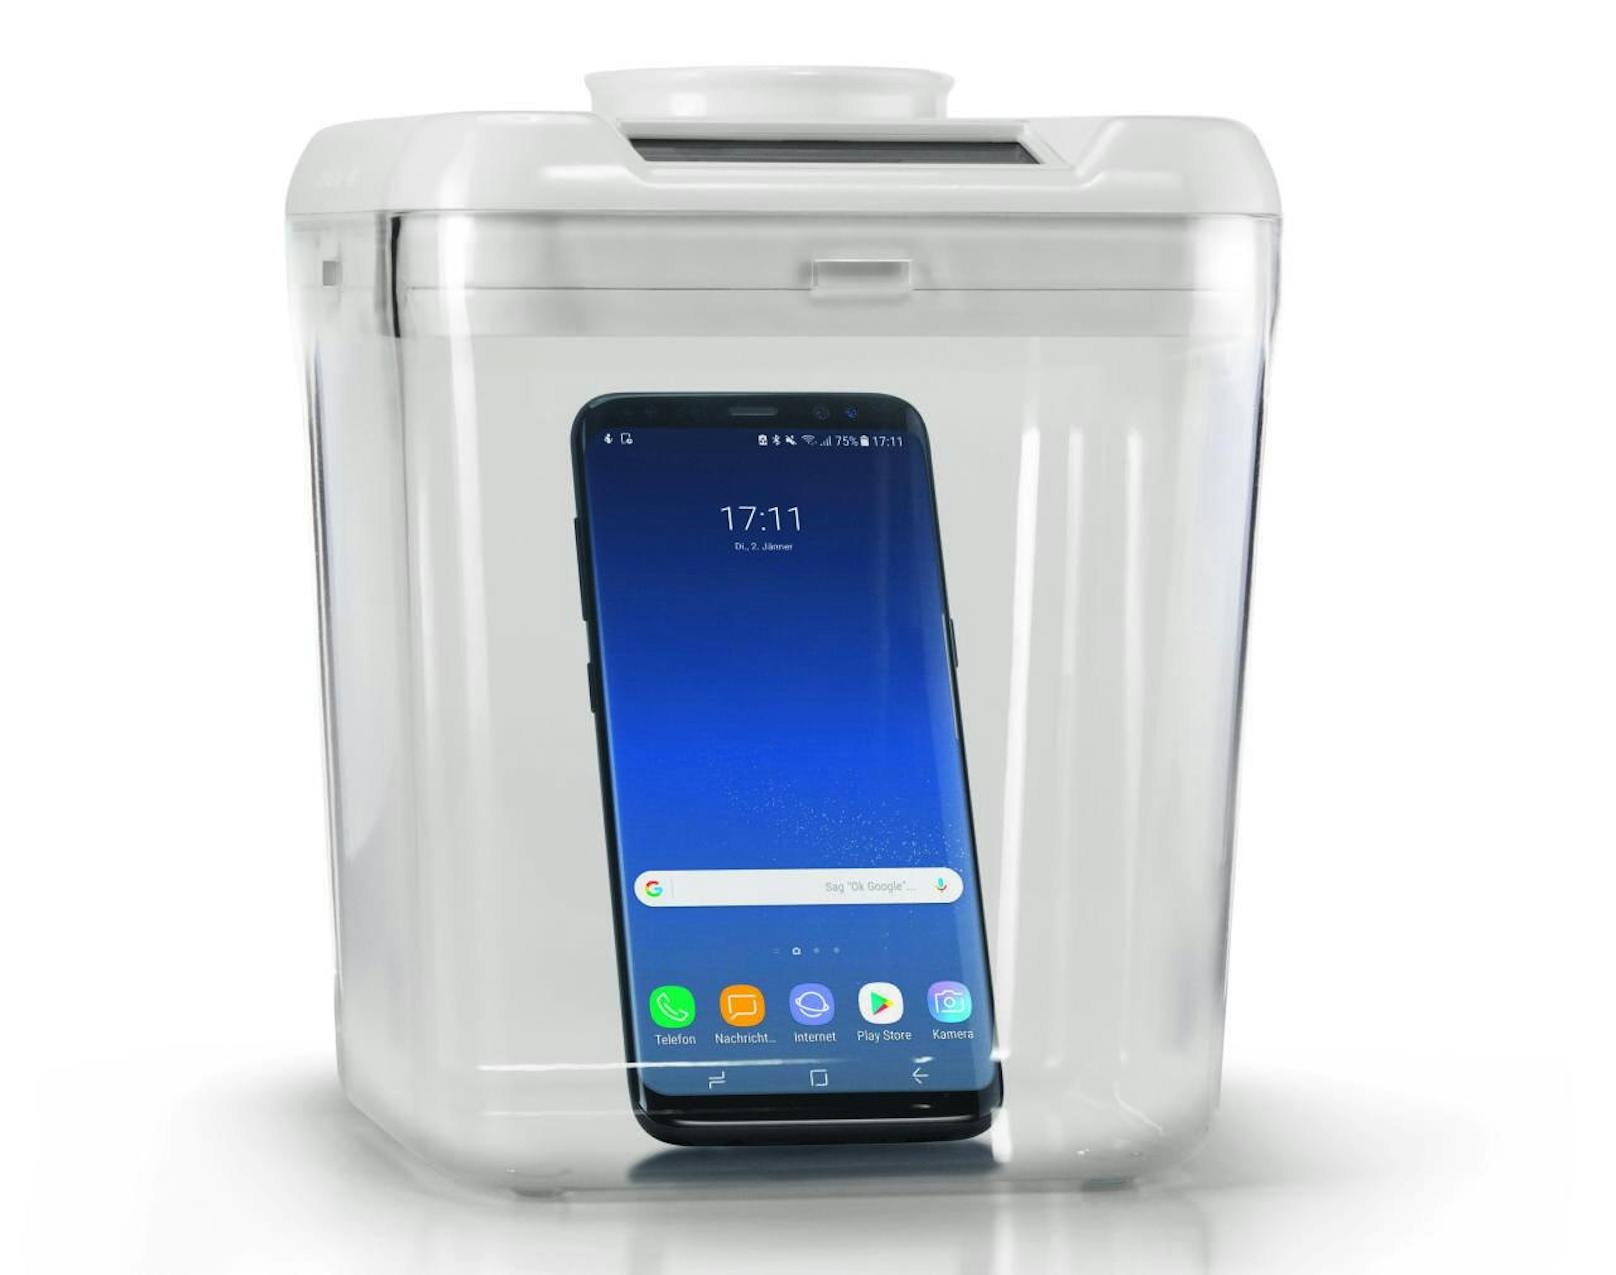 <b>09. Jänner 2018:</b> Unter dem Motto "Sei so smart wie dein Phone" präsentiert Samsung Electronics Austria ein verschließbares Behältnis, in dem das Smartphone für eine selbst definierte Zeitspanne eingesperrt werden kann, um bewusste Pausen im Online-Sein einzulegen. Die "Samsung Offline Box" steht für "Momente, die es wert sind, geteilt zu werden". Die Offline Box wird ab sofort kostenlos unter http://offlinebox.samsung.at verlost.